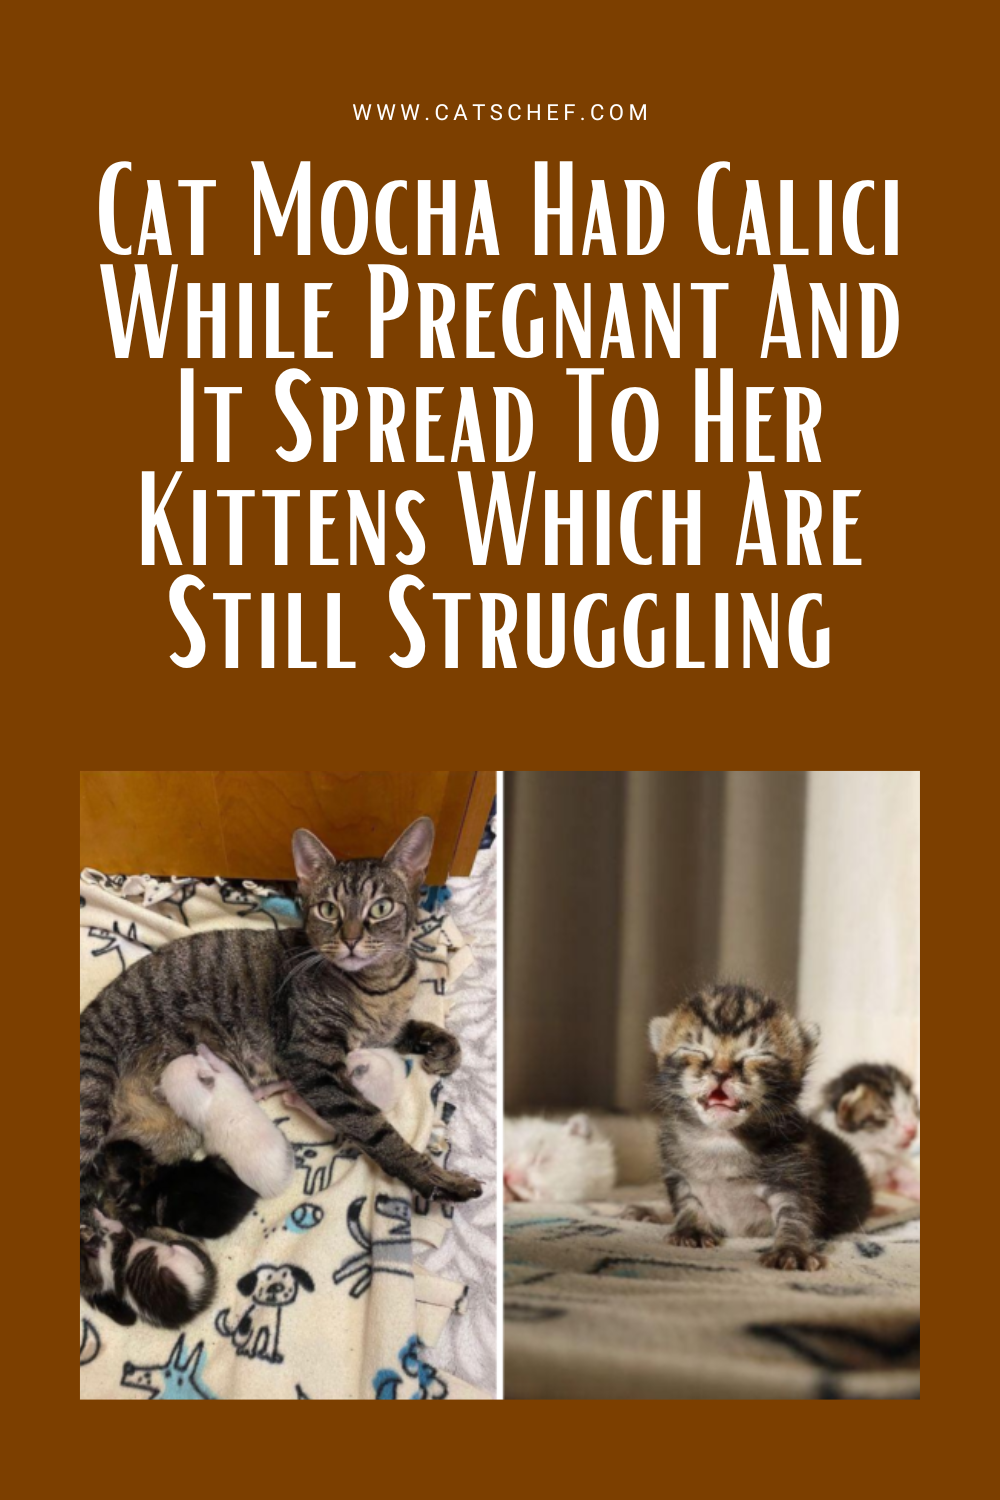 Kedi Mocha Hamileyken Calici Hastalığına Yakalandı ve Bu Hastalık Hala Mücadele Eden Yavrularına da Bulaştı